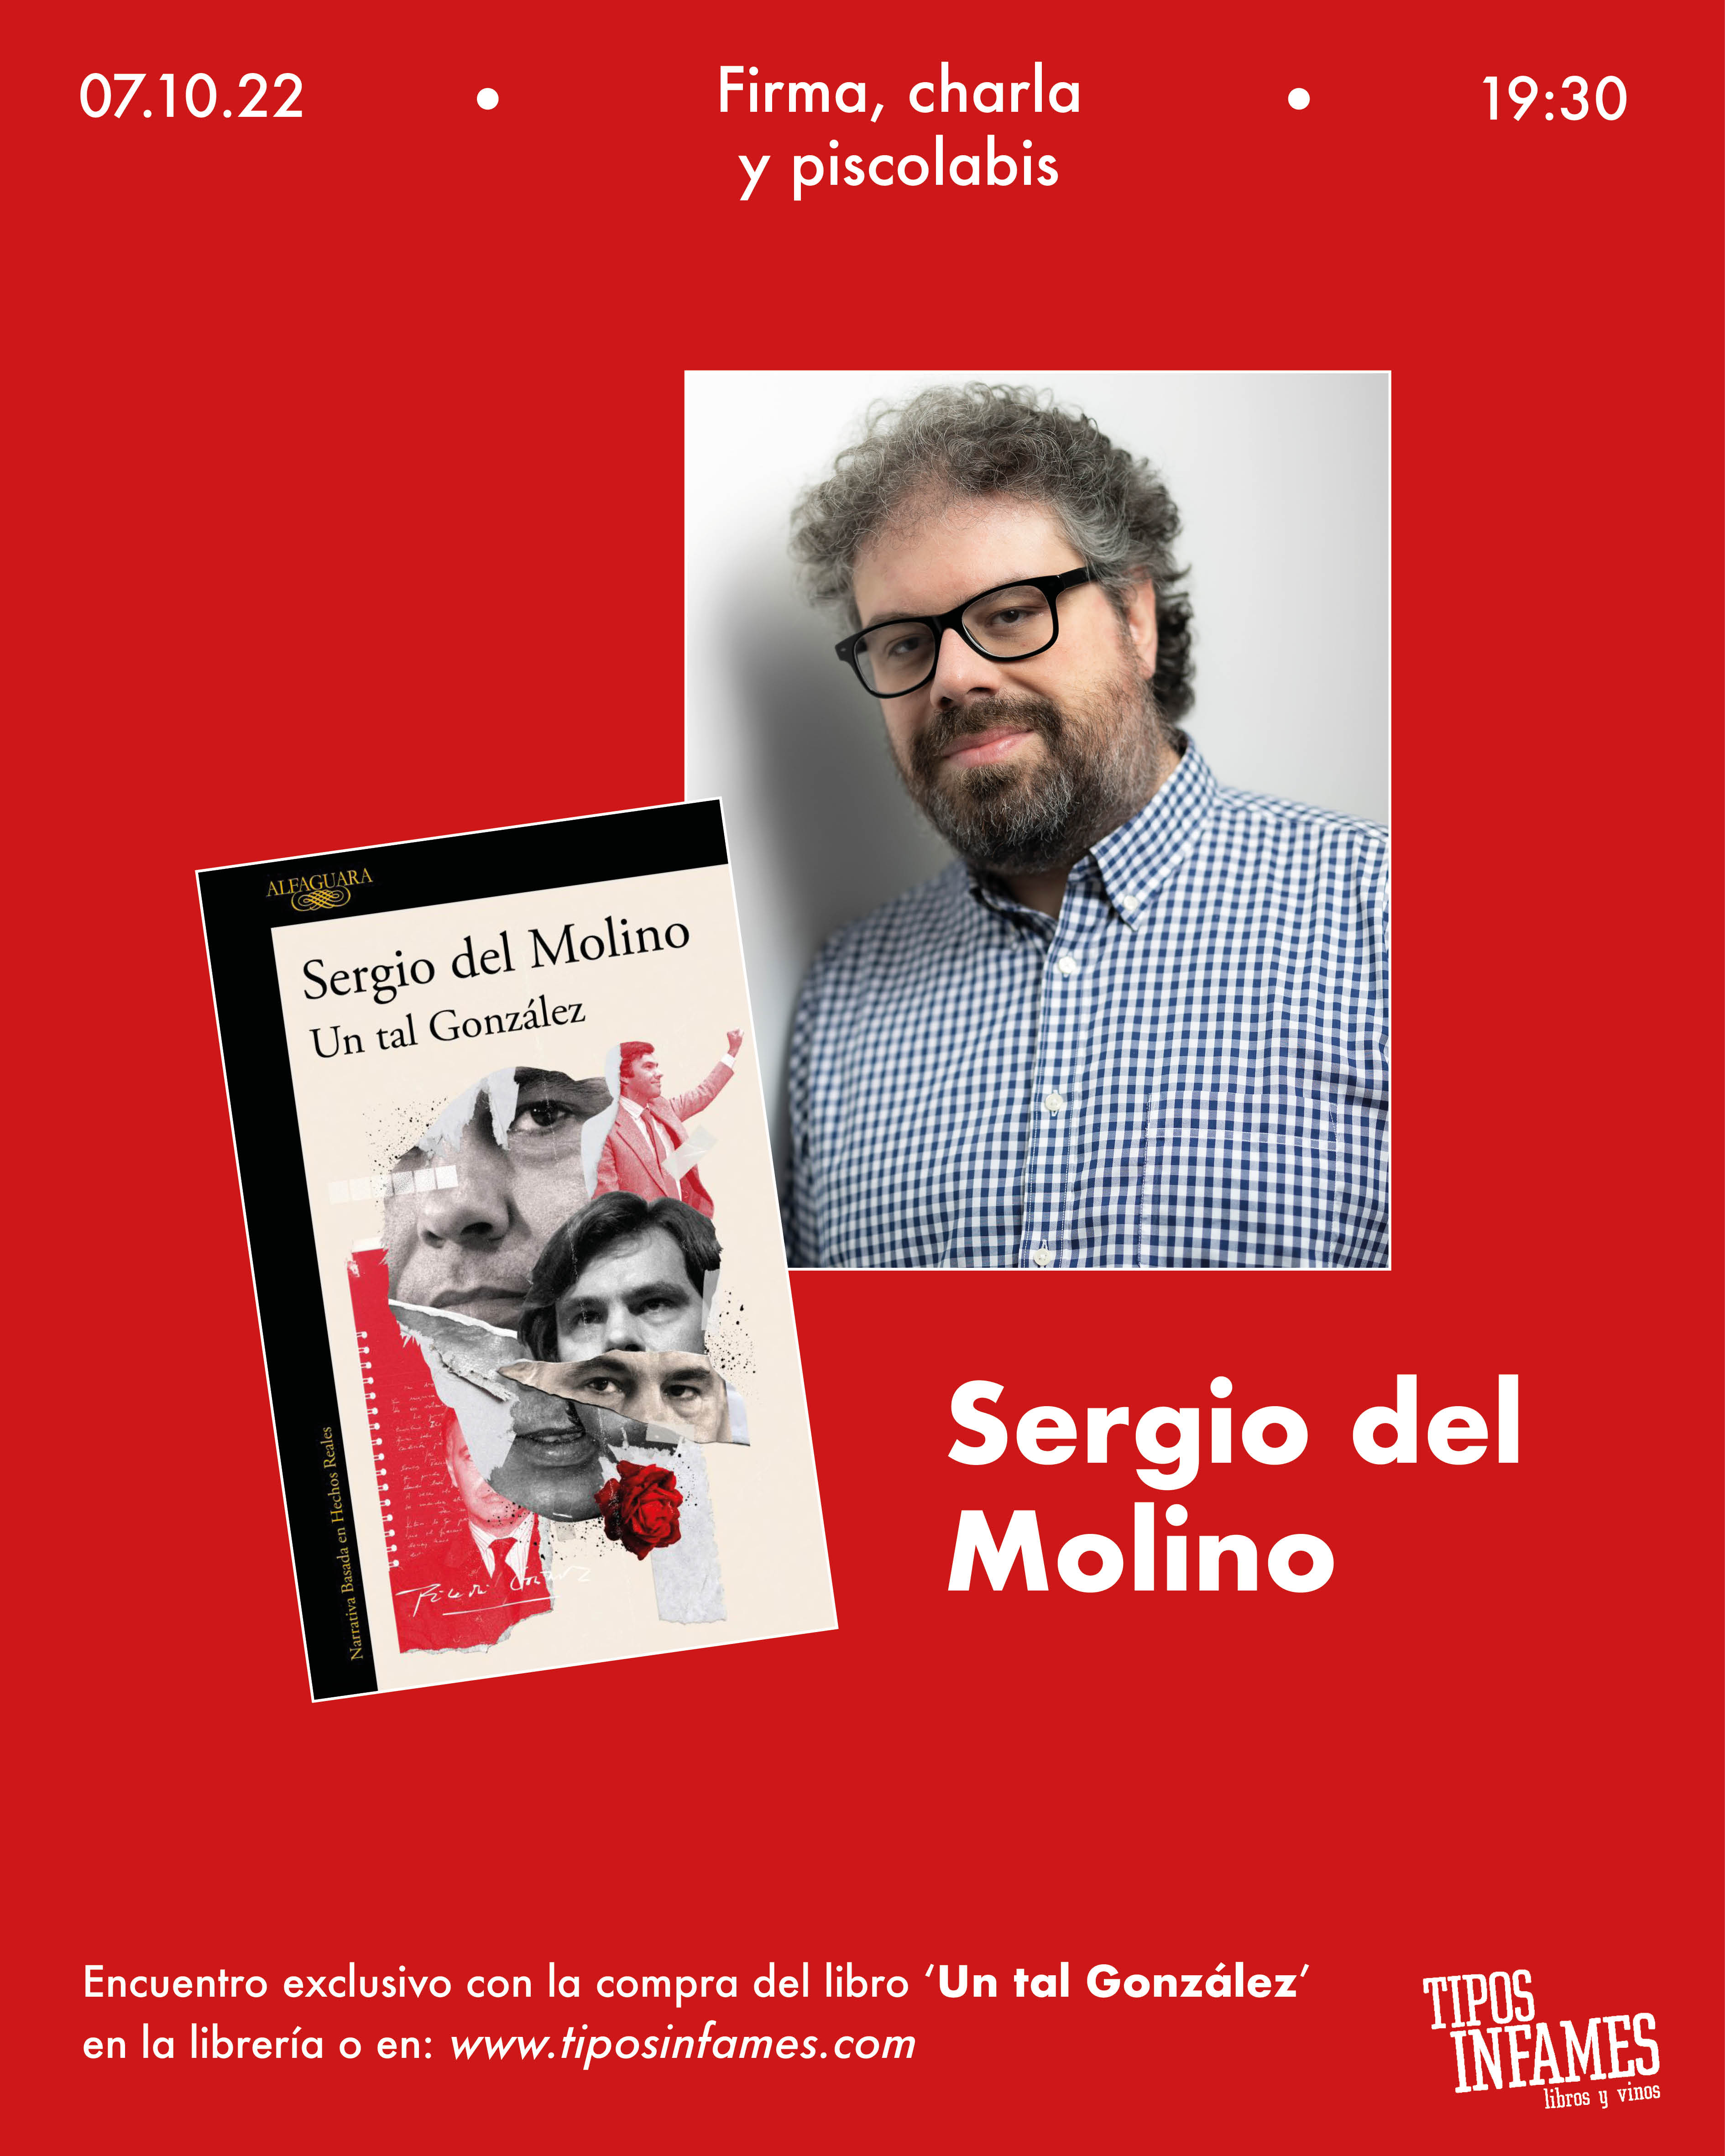 Firma, charla y piscolabis con Sergio del Molino